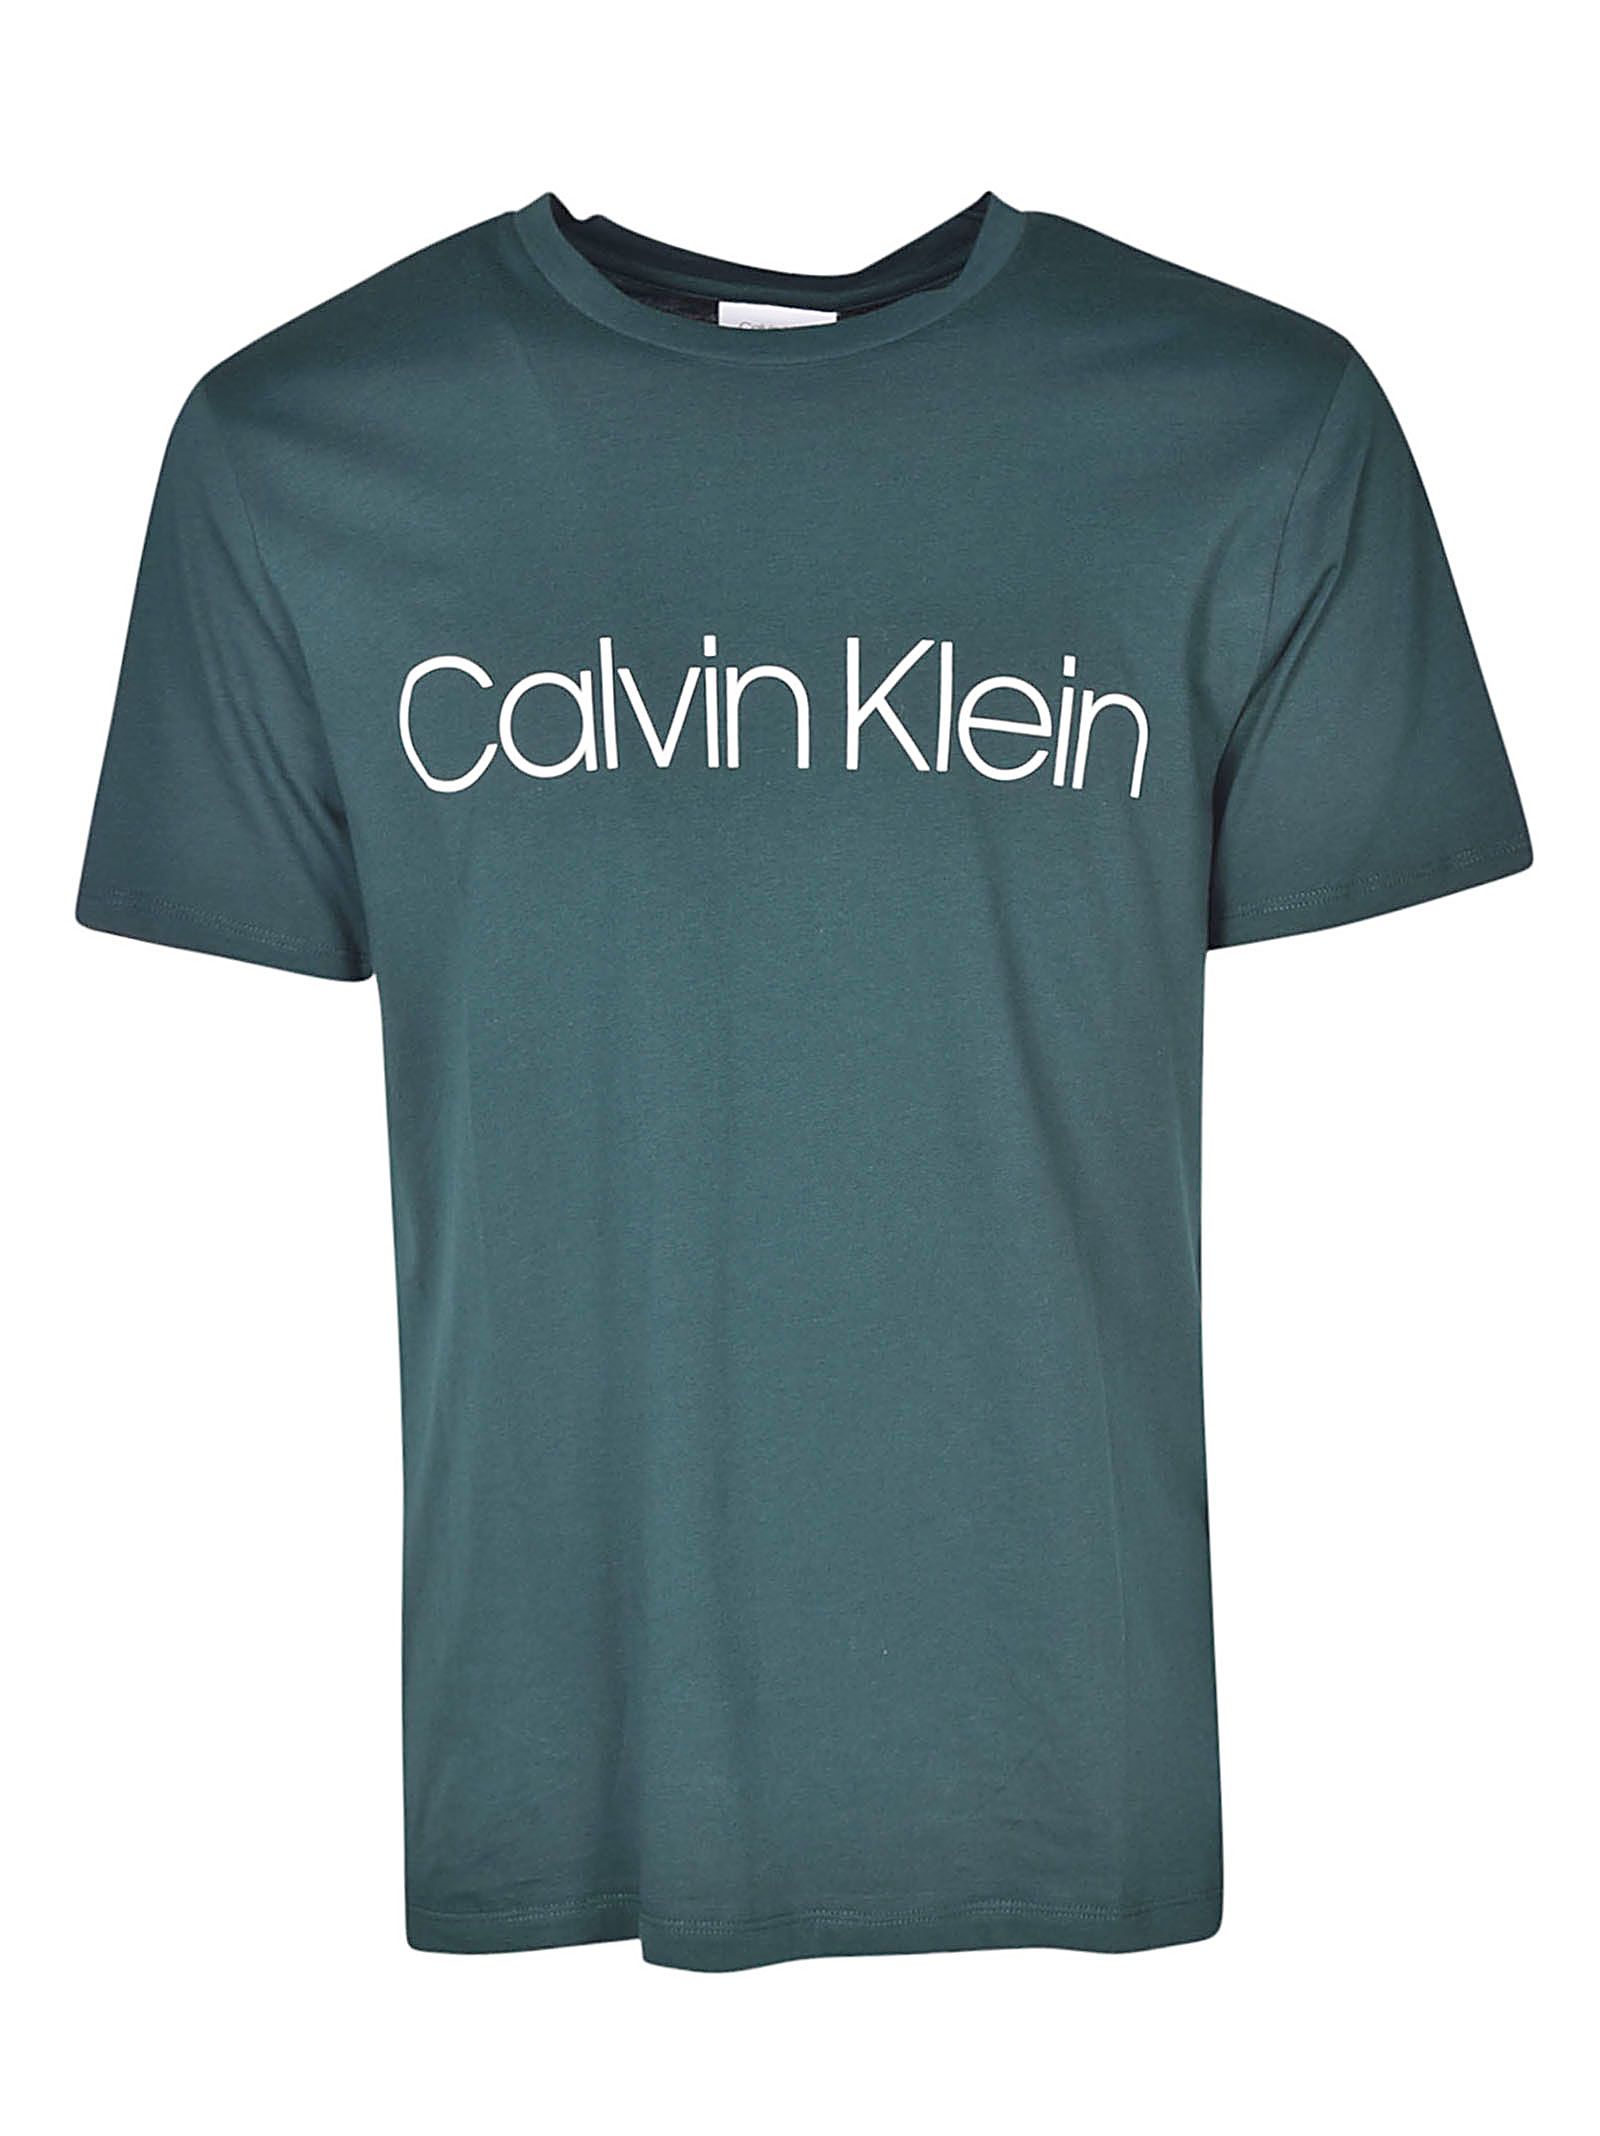 italist | Best price in the market for Calvin Klein Calvin Klein ...